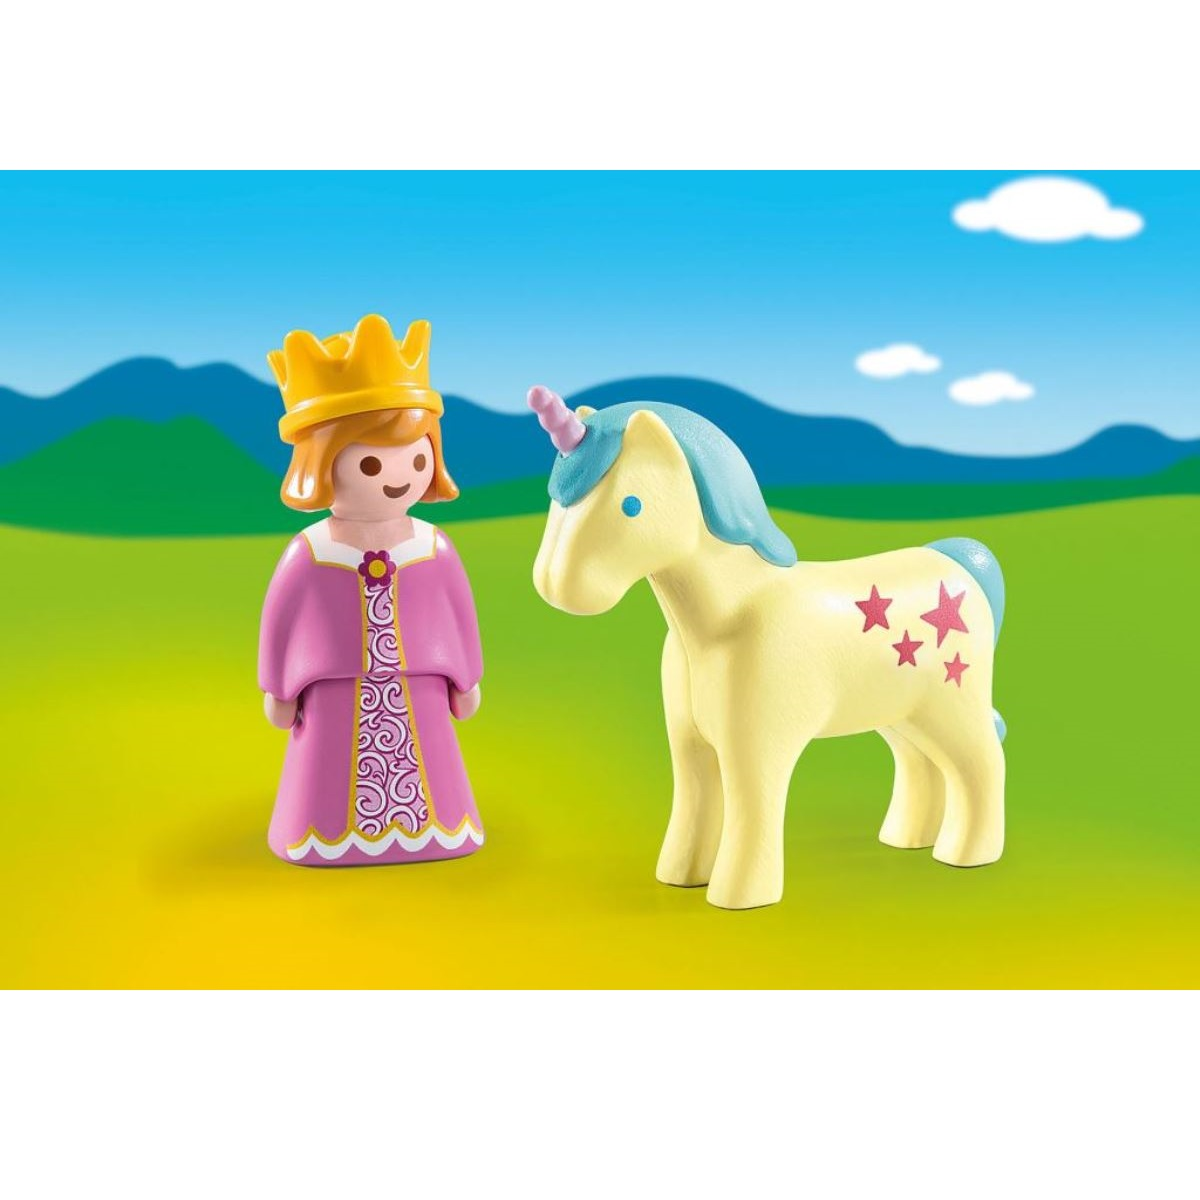 Einhorn mit PLAYMOBIL Prinzessin Spielzeug